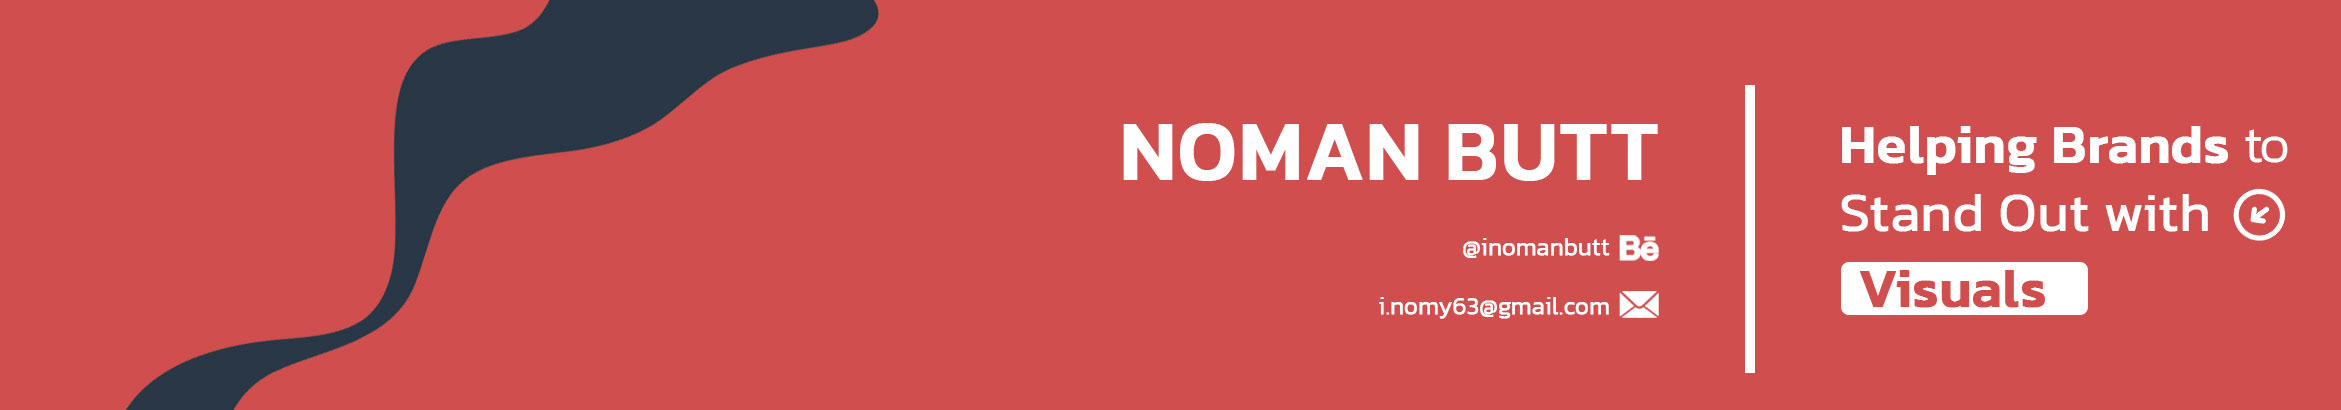 Баннер профиля Noman Butt